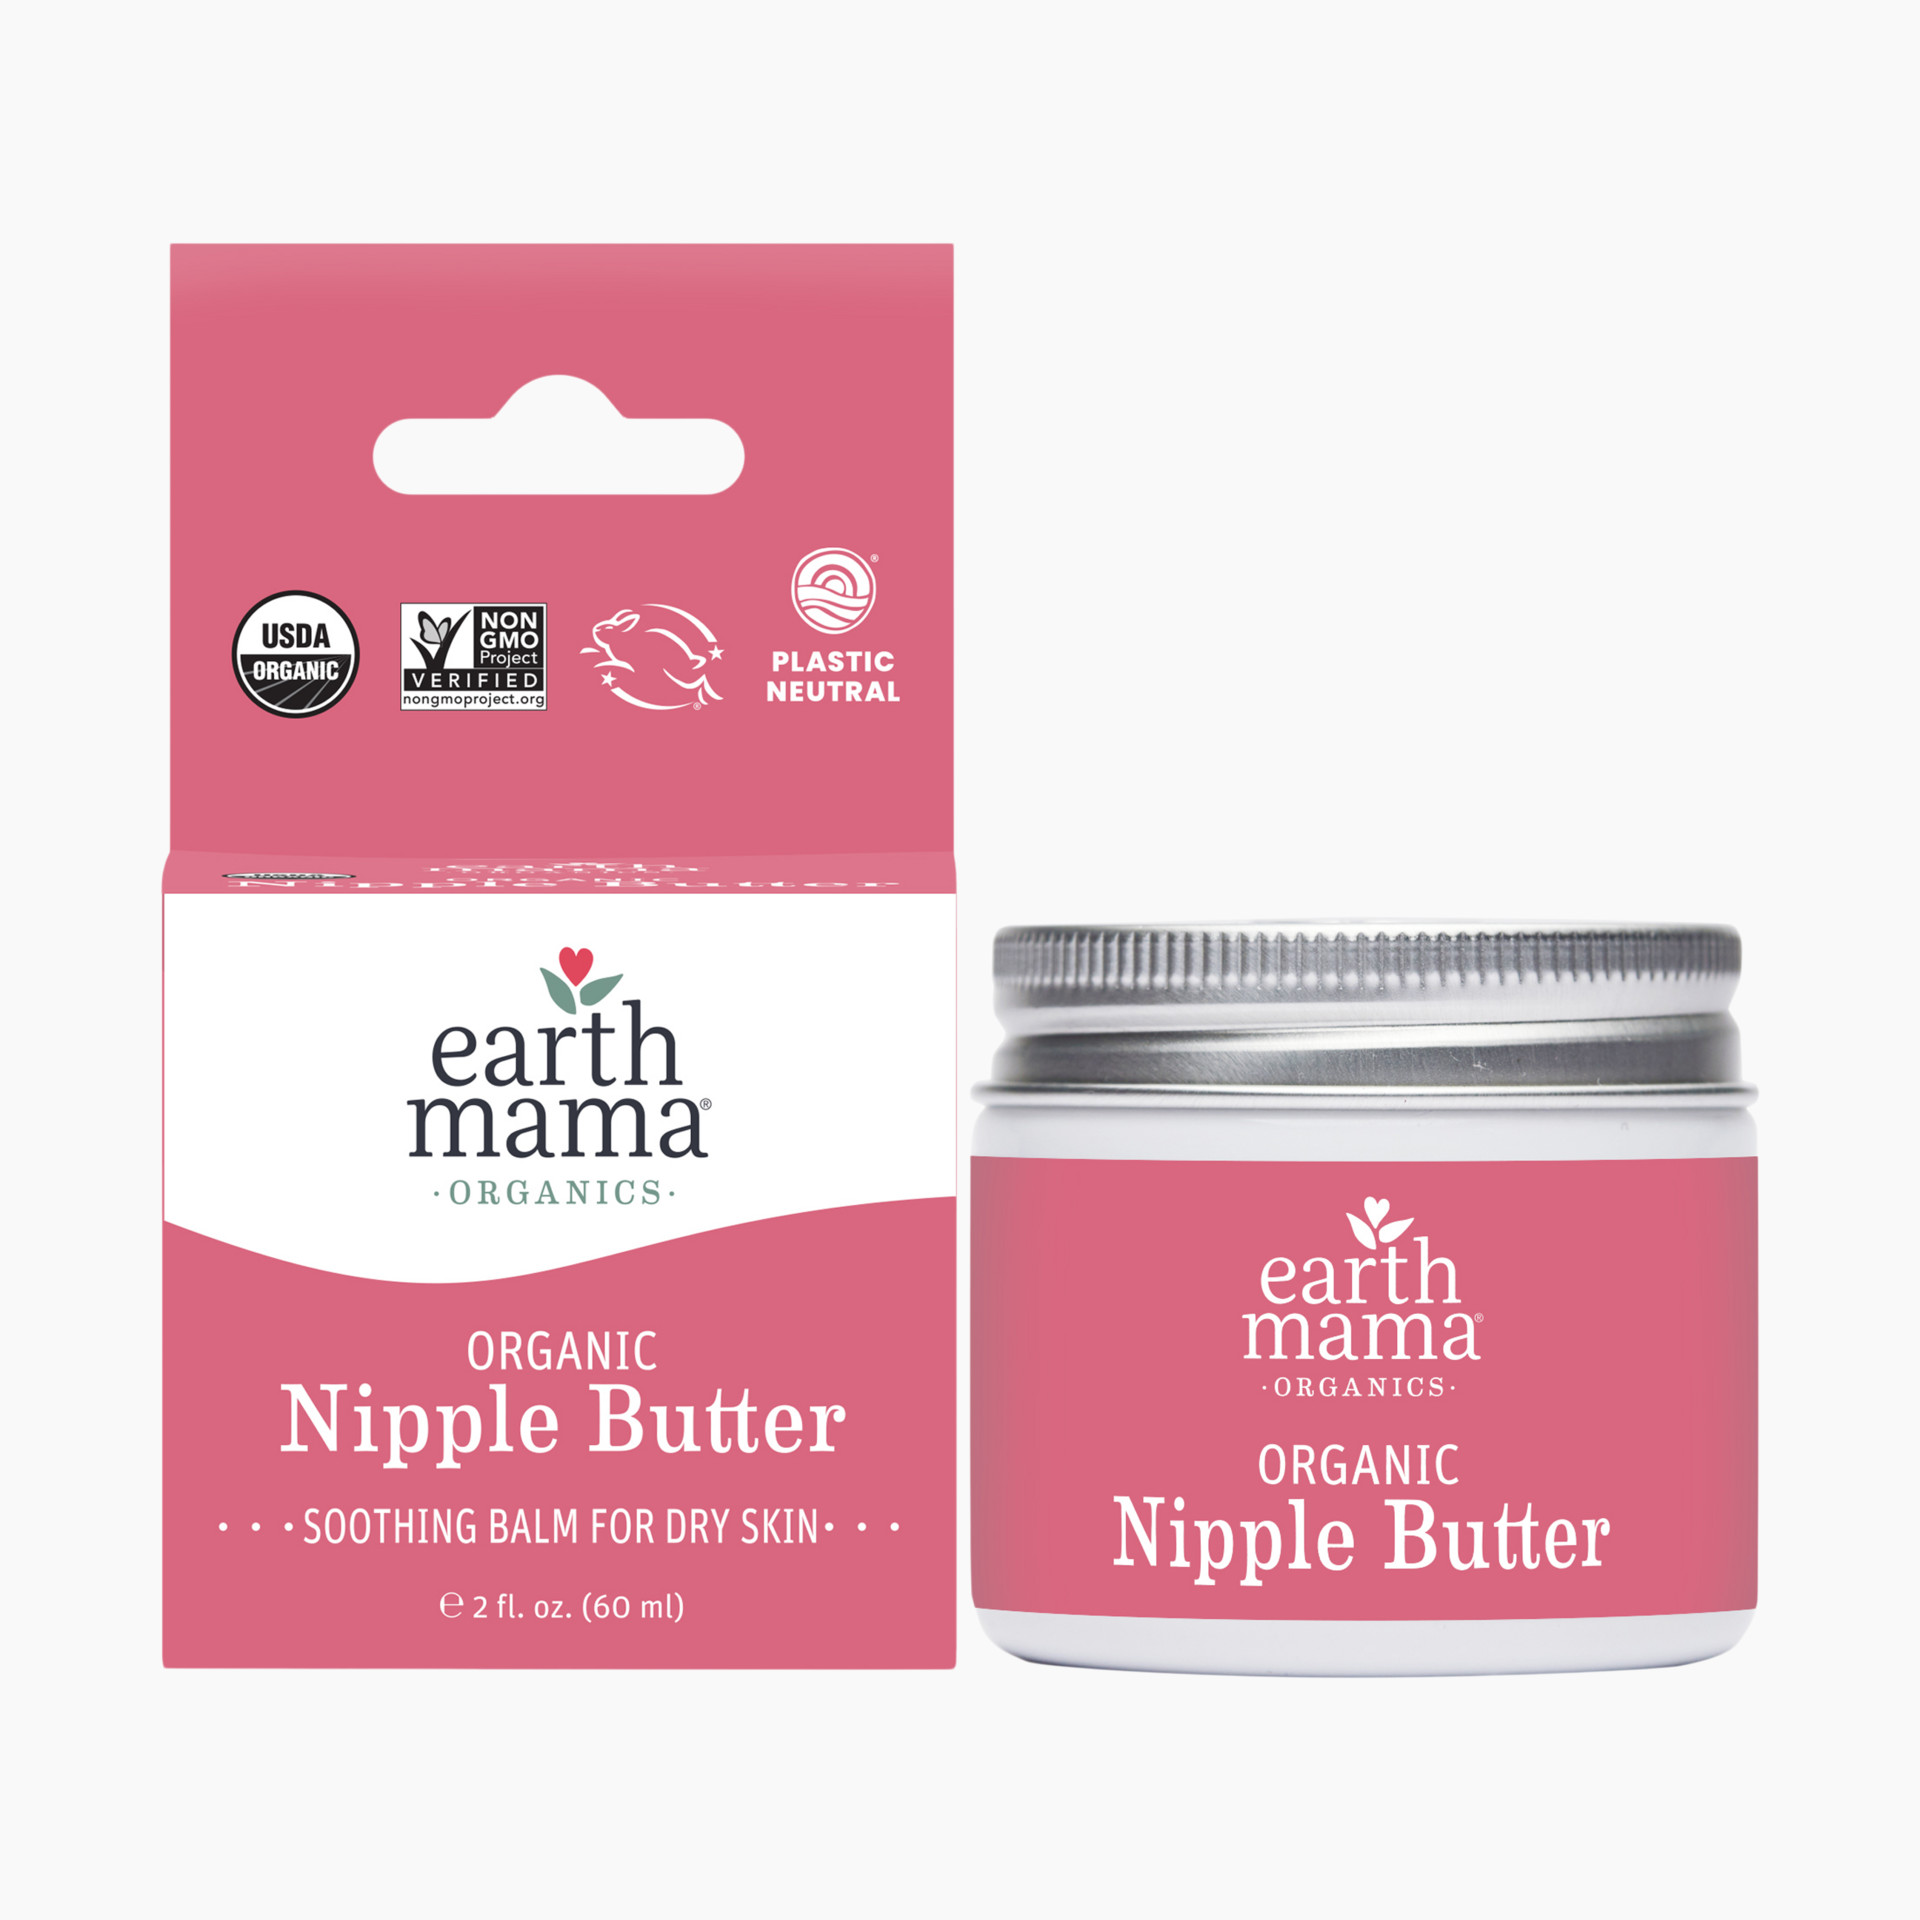 Lansinoh Organic Nipple Balm, 2 oz.